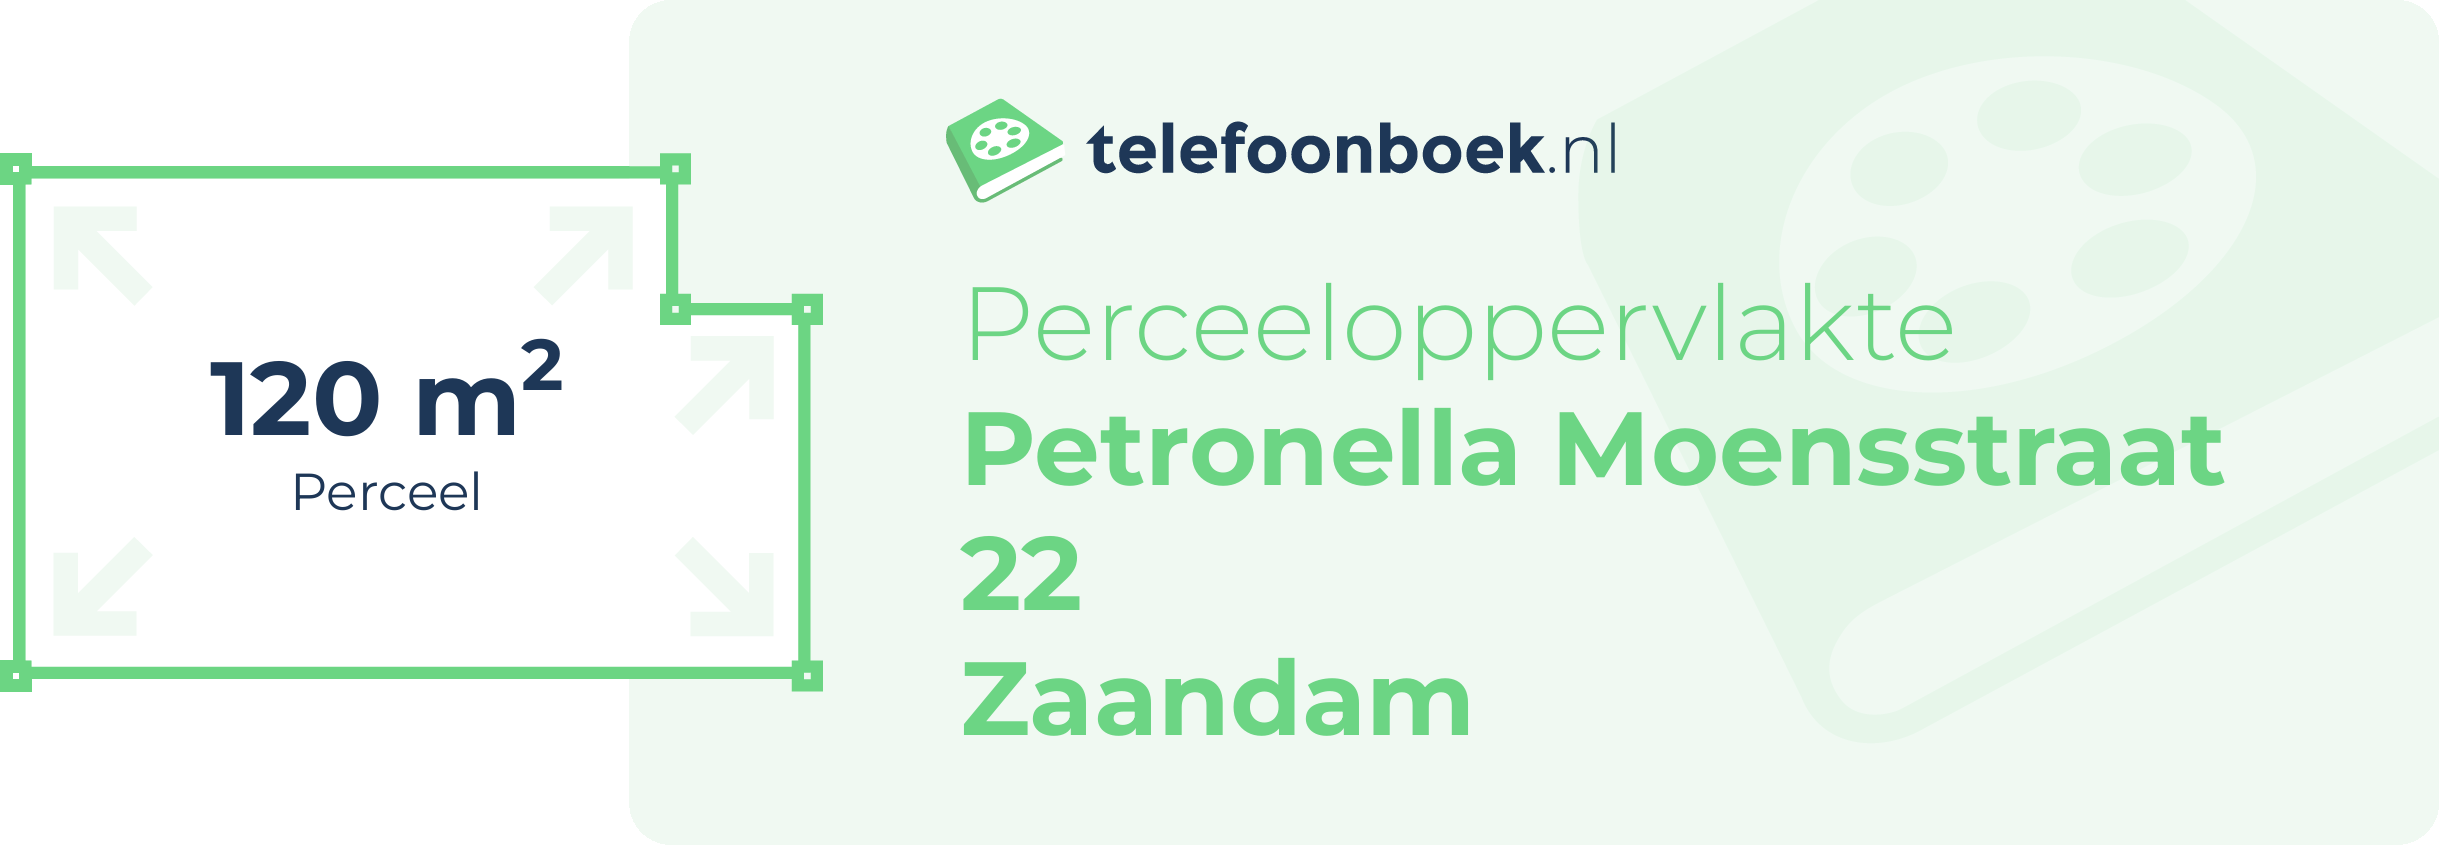 Perceeloppervlakte Petronella Moensstraat 22 Zaandam